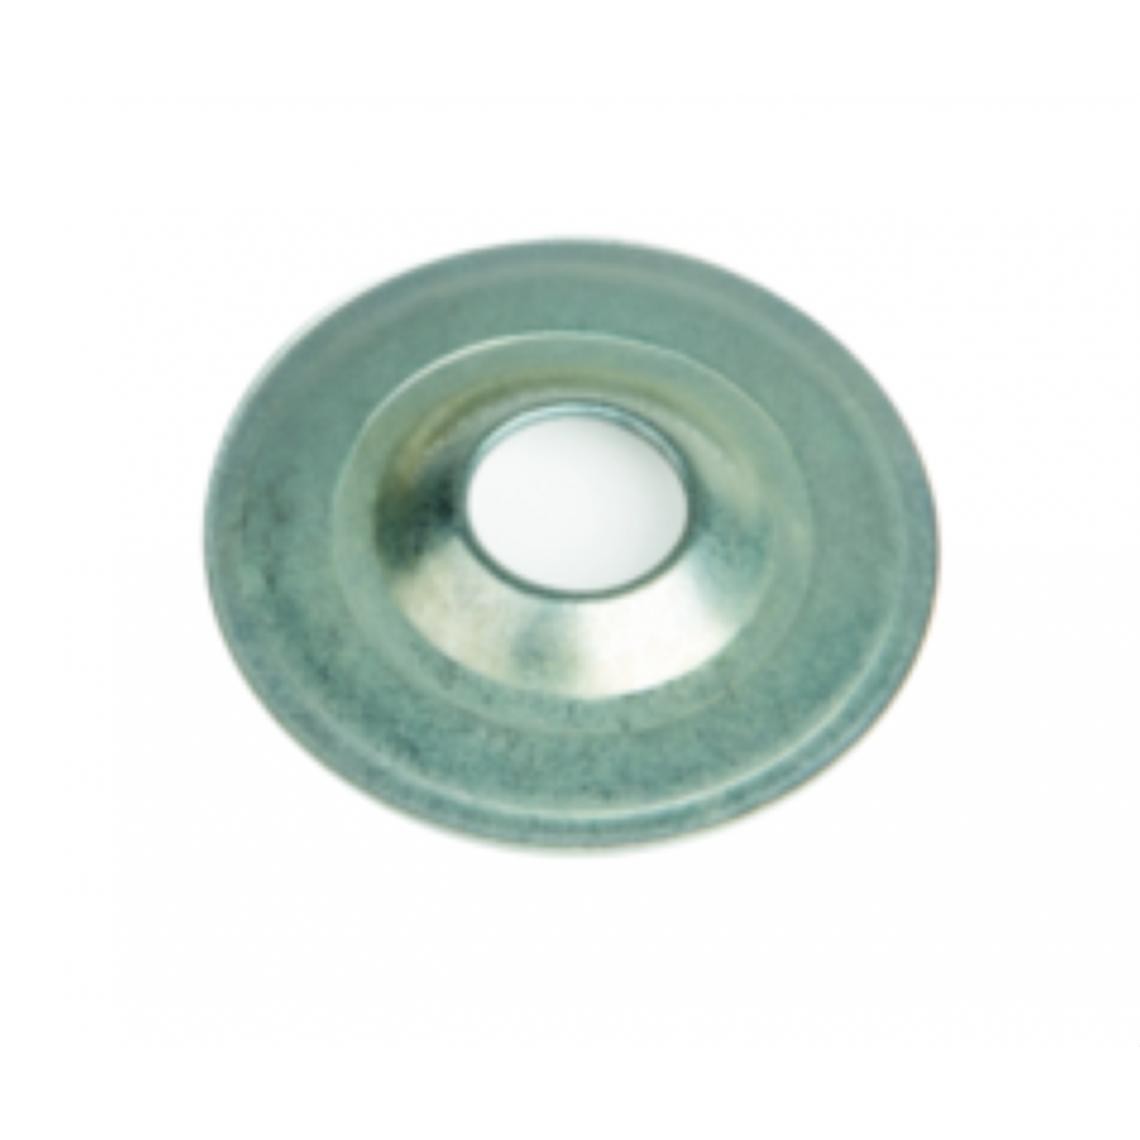 Bizline - rosace - plate - diamètre 25 mm - boite de 100 - bizline 400138 - Coudes et raccords PVC